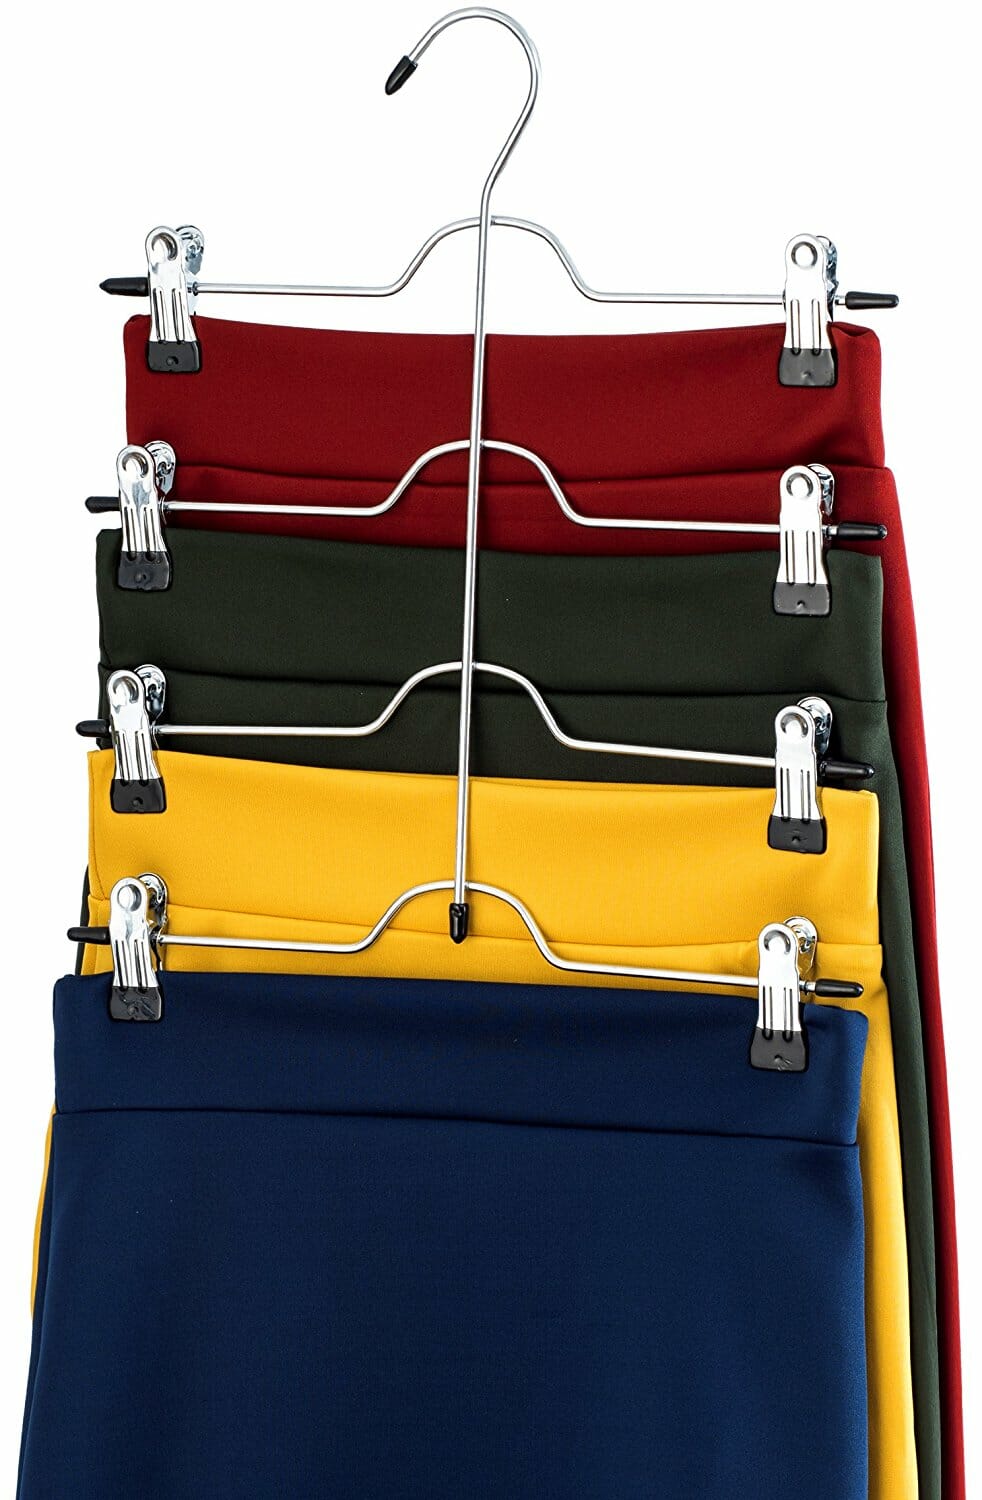 Skirt Hangers